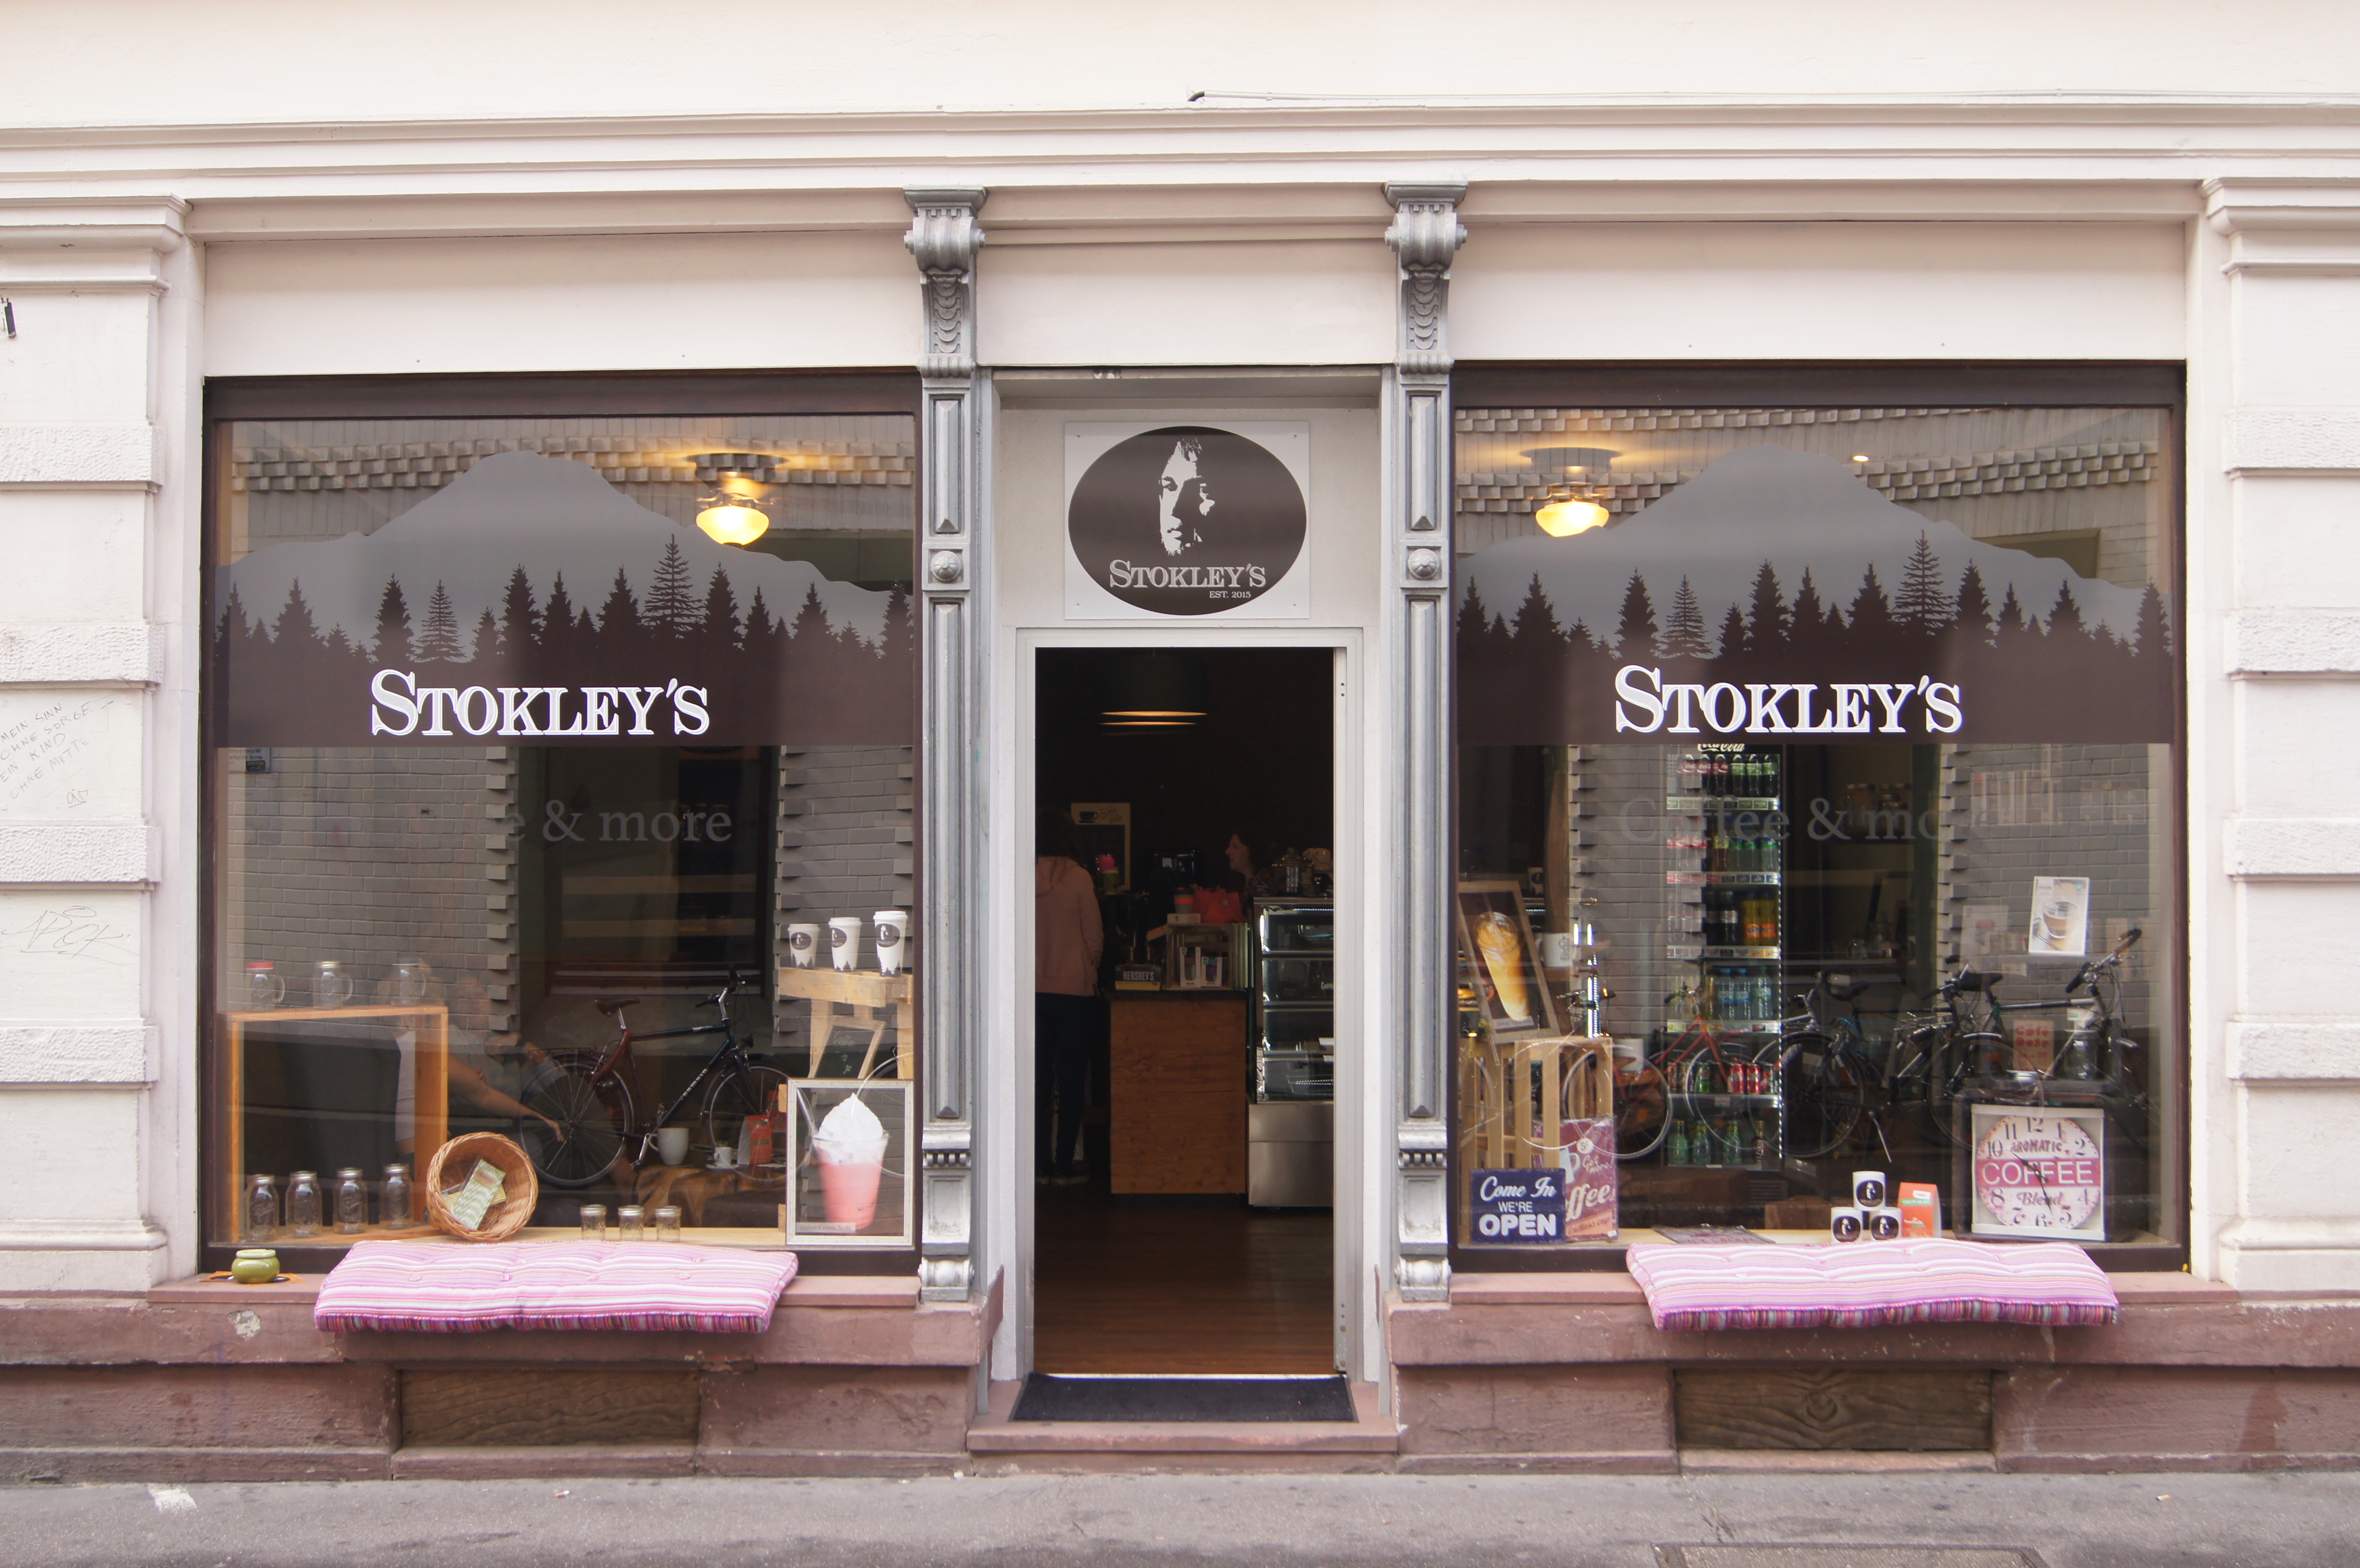 Vormals Postfiliale, nun ein Café: Das „Stokley’s“ in der Plöck. Bild: Margarete Over